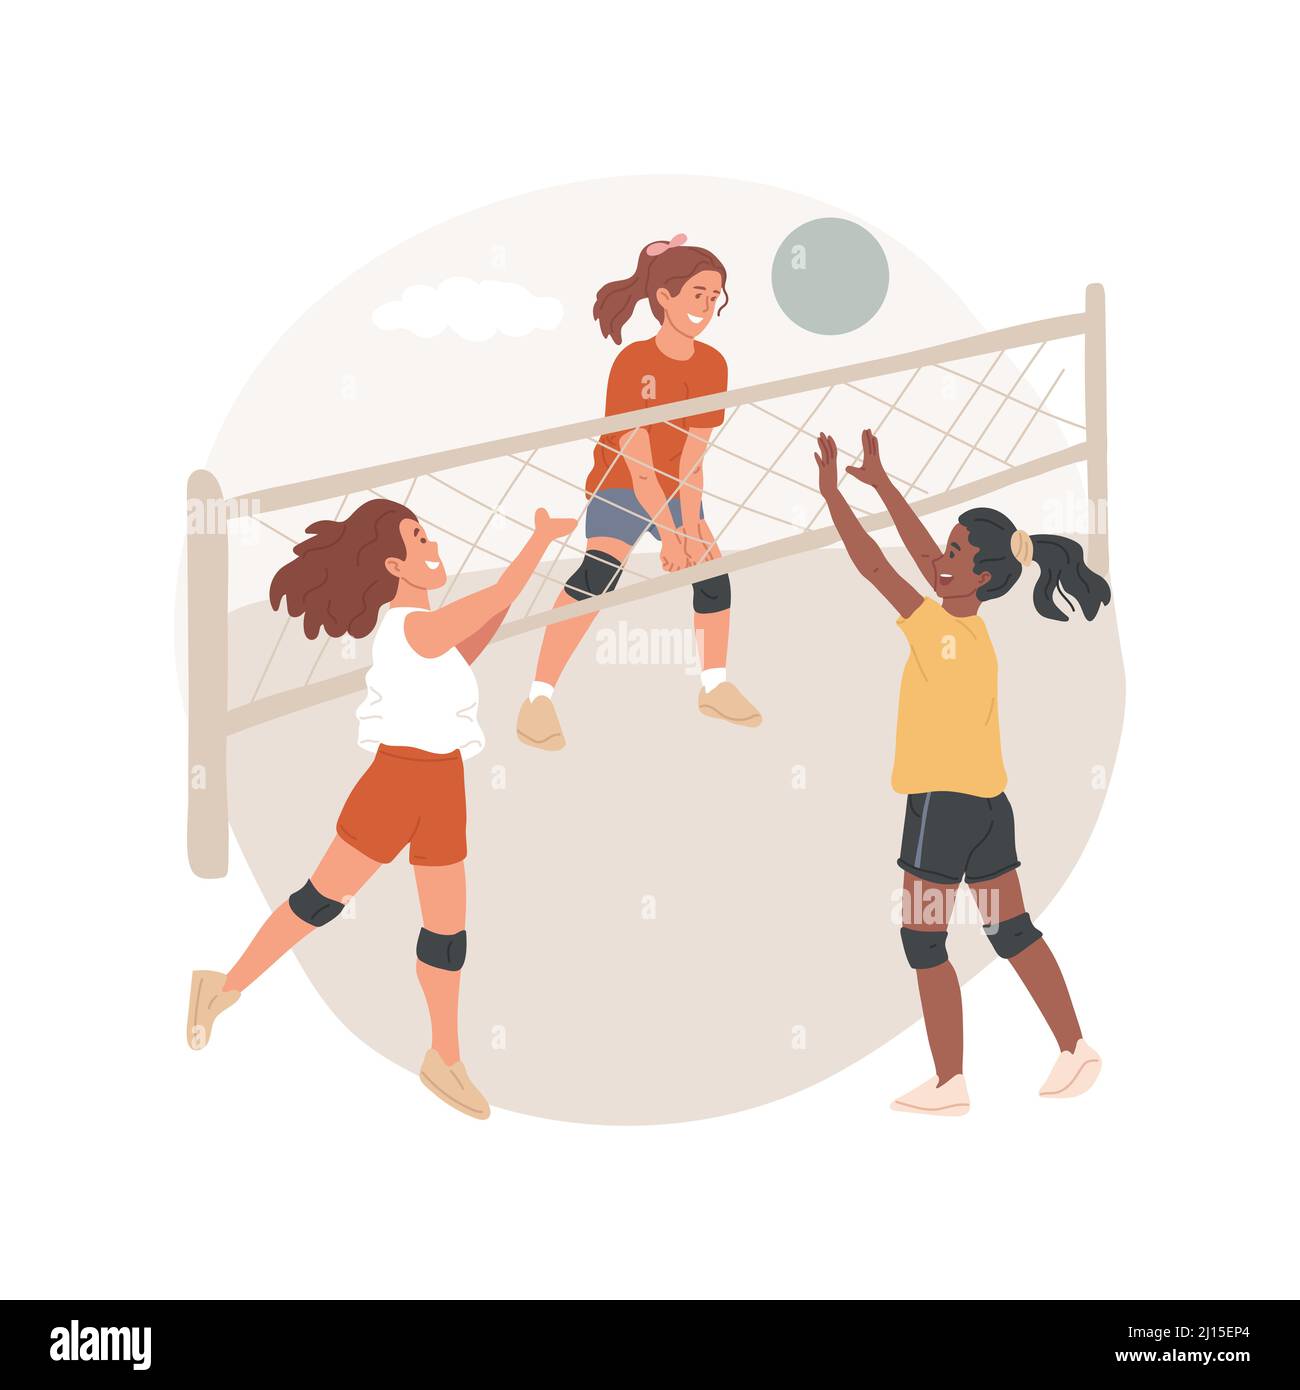 Campo de voleibol ilustración aislada de vectores de dibujos animados.  Campamento de verano de voleibol, programa de PA día, juego competitivo,  ejercicio físico al aire libre, centro de guardería, caricatura vectorial  del